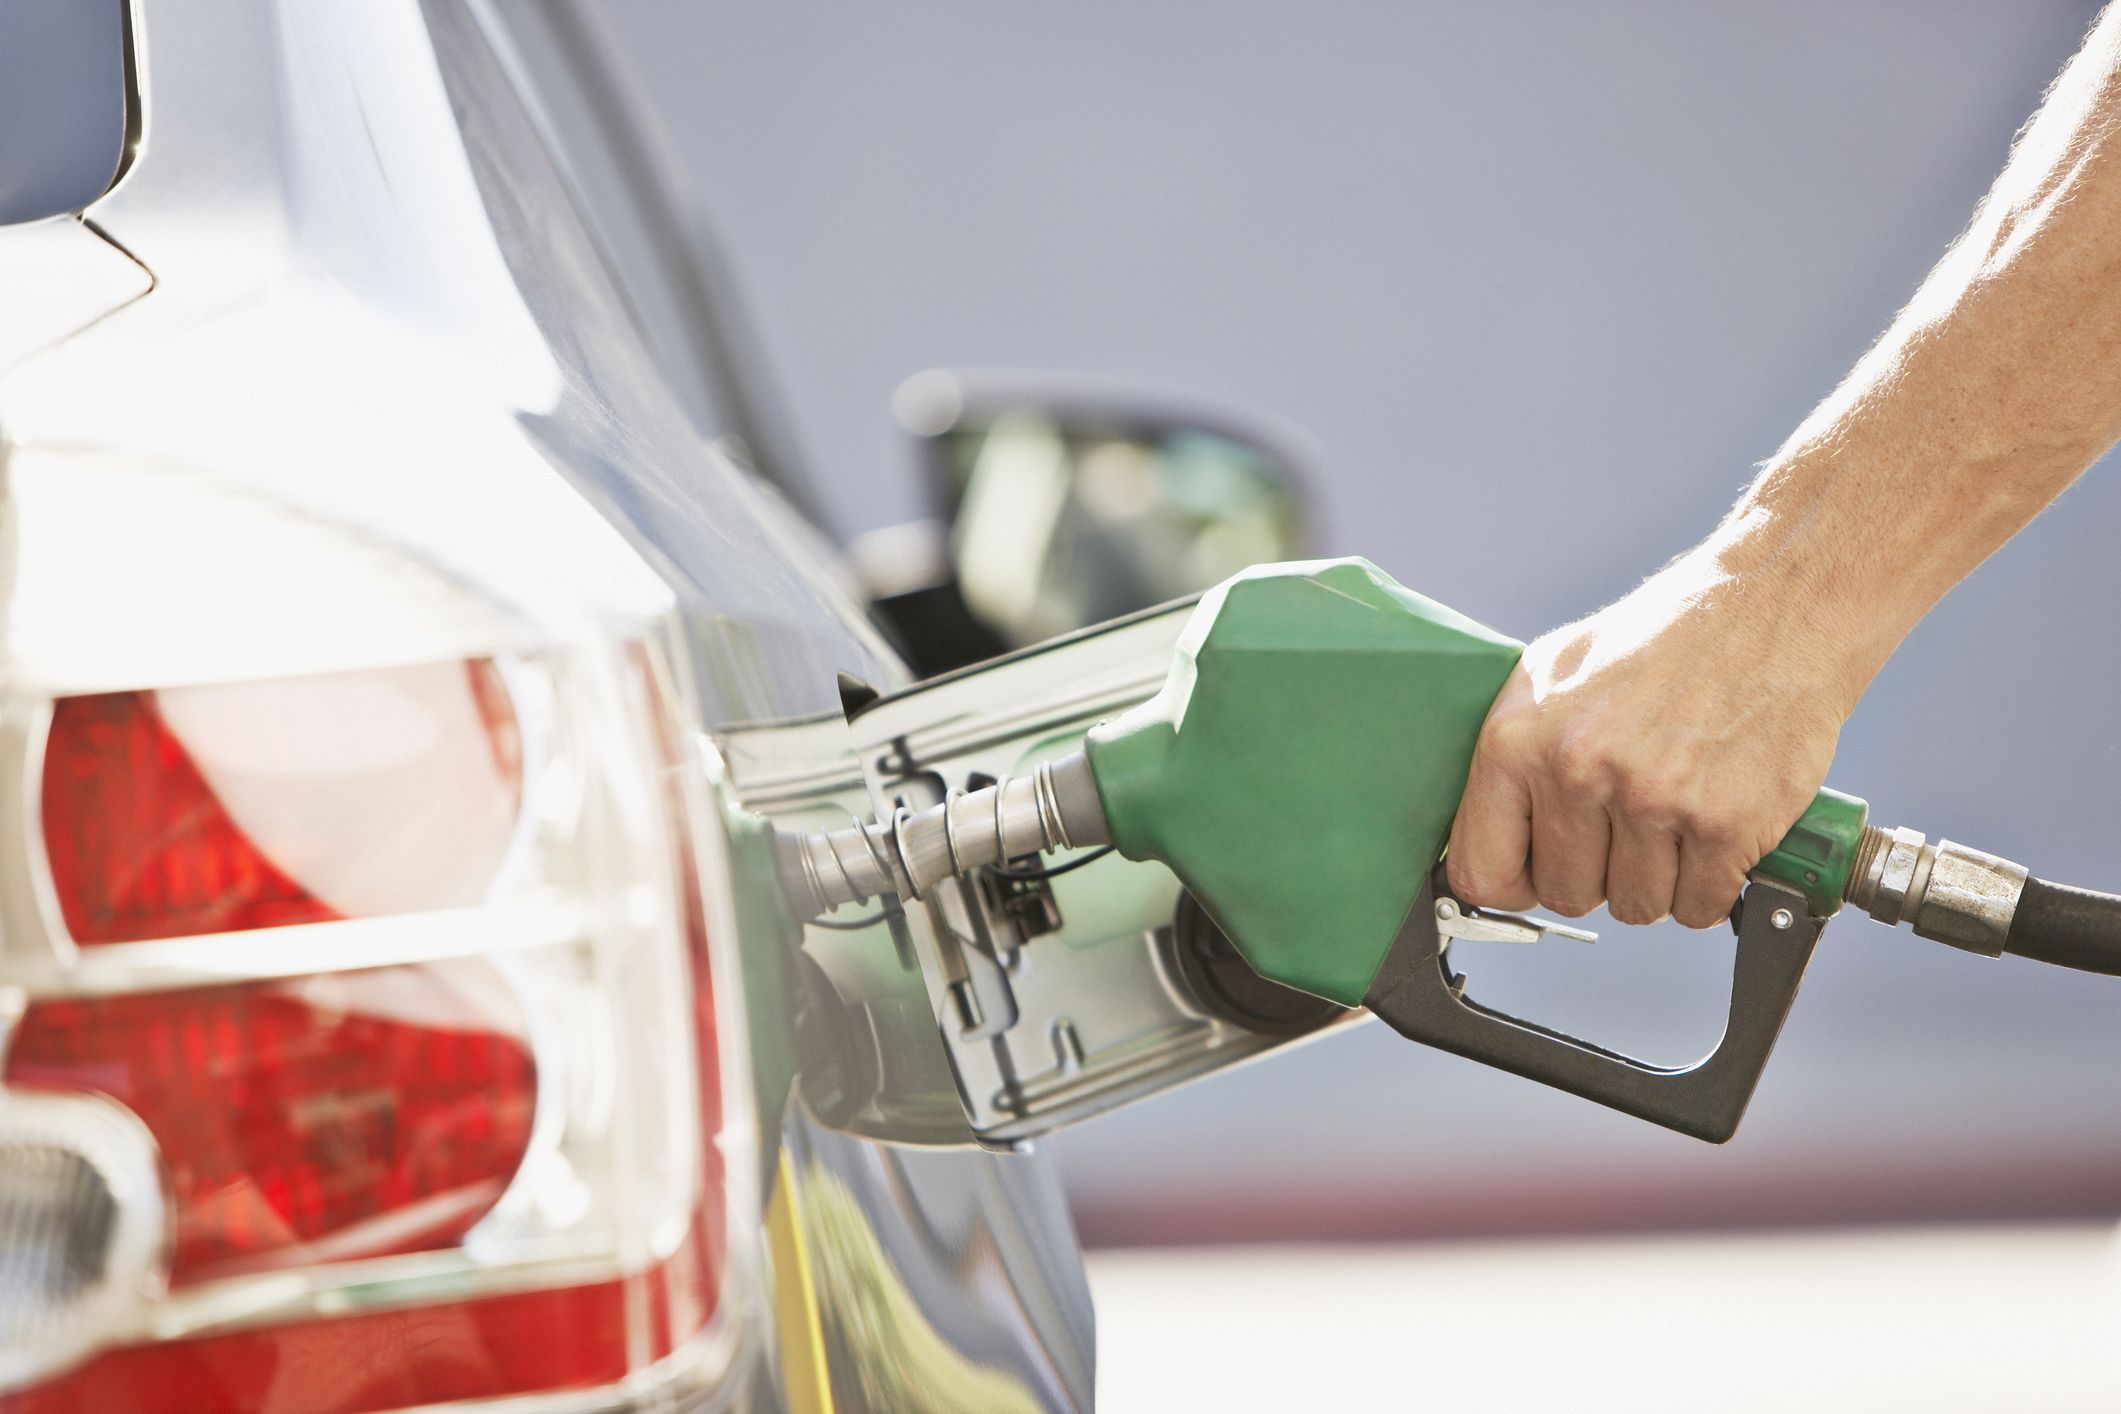  Průměrná cena hydrogenního etanolu se zvyšuje o 5,08 %, z 3,74 na 3,93 R$.